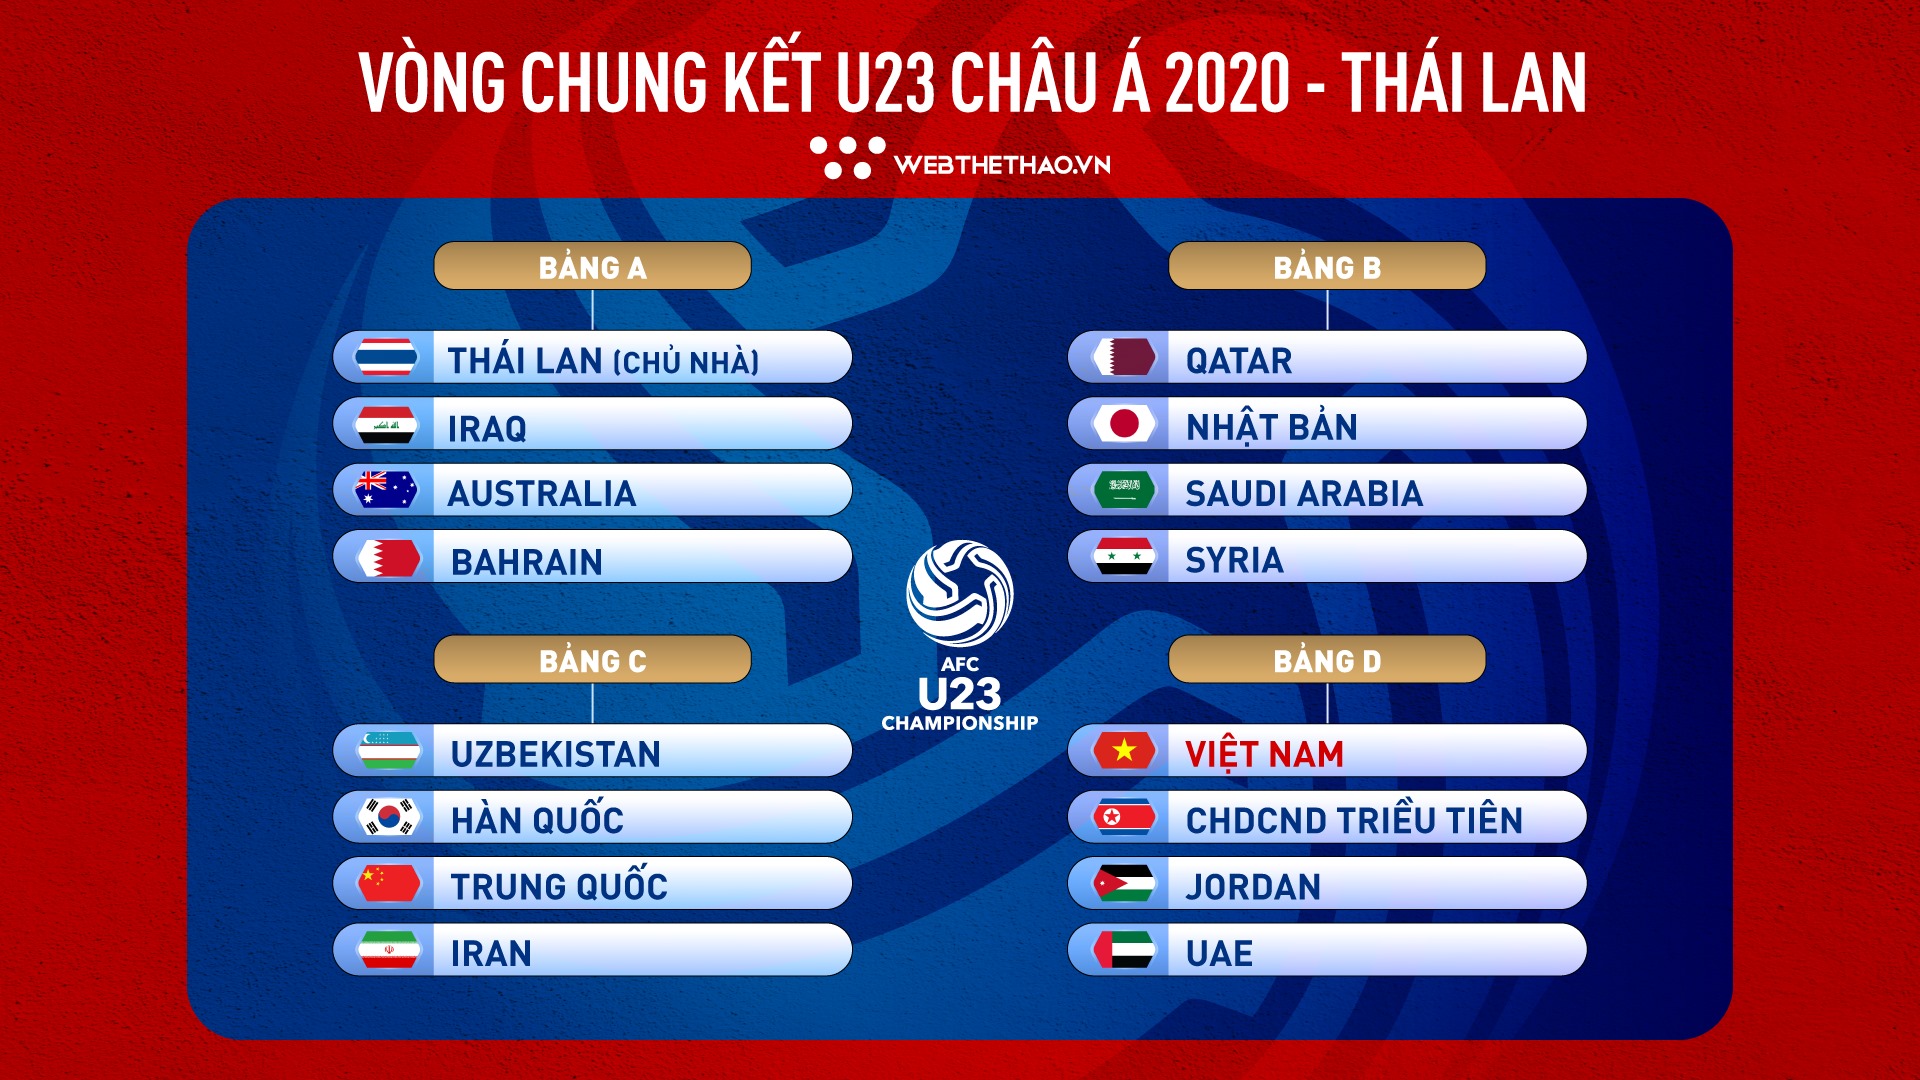 VCK U23 châu Á 2020 tổ chức ở đâu?